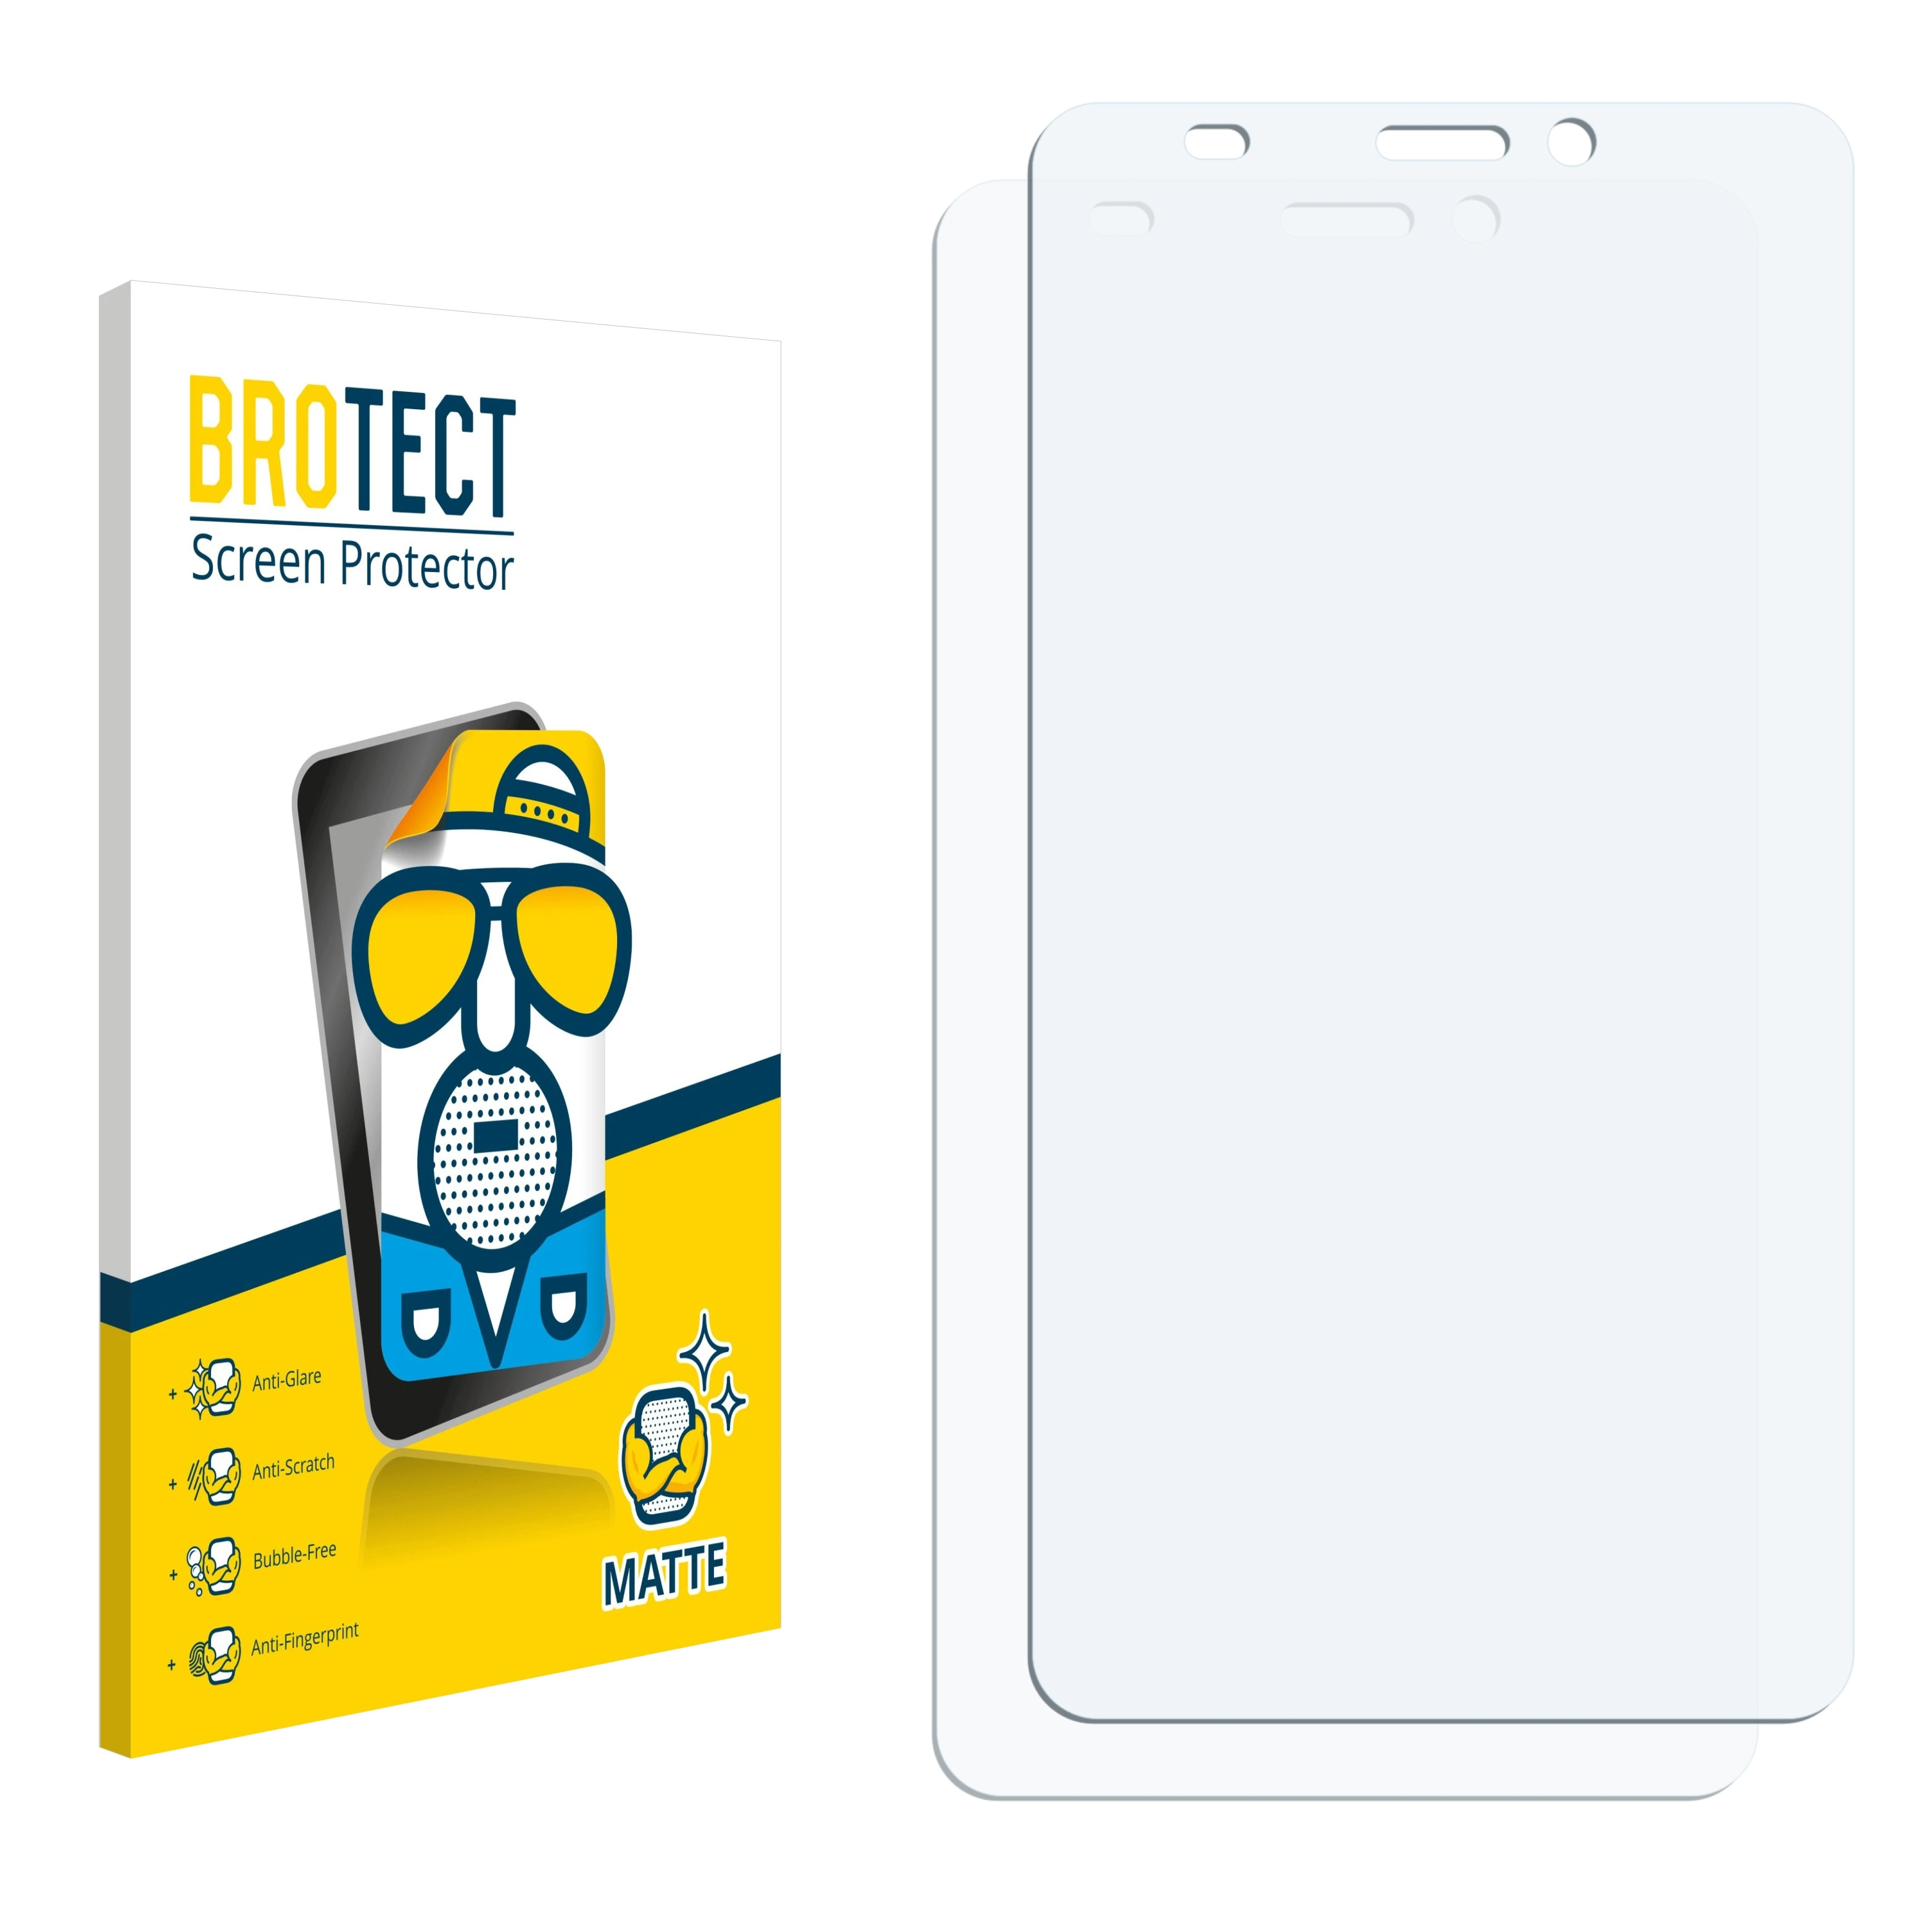 matte BROTECT Duo PhonePad S552U) Schutzfolie(für 2x Mediacom